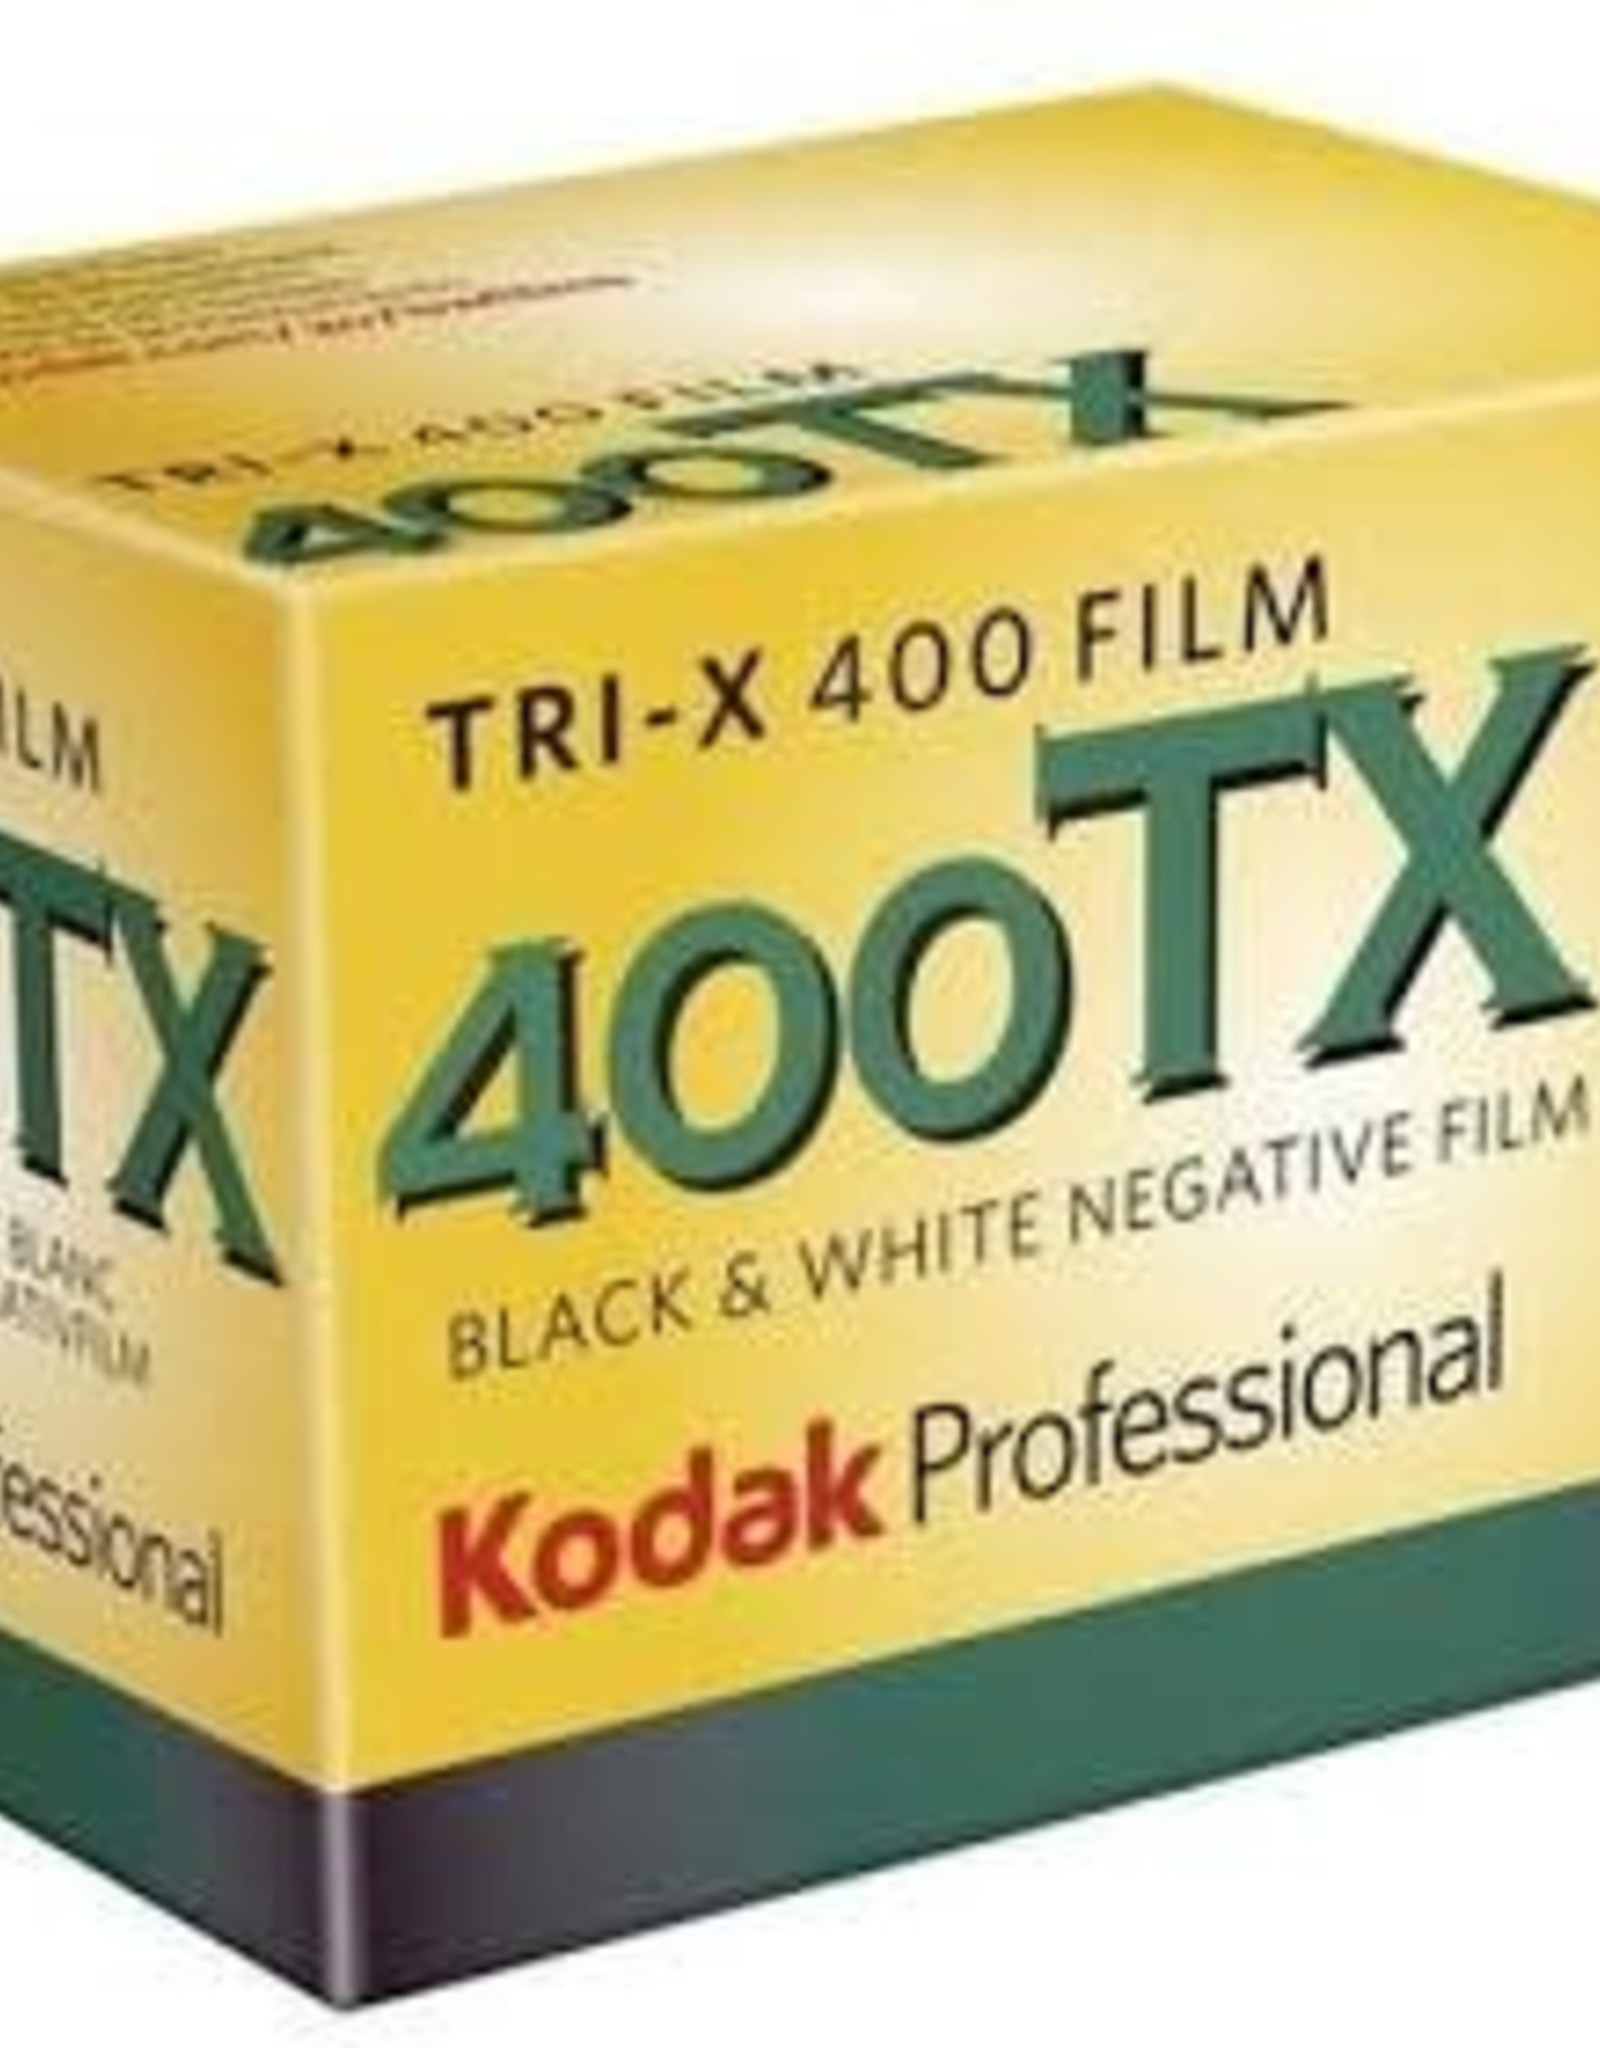 Kodak Kodak Tri-X 400